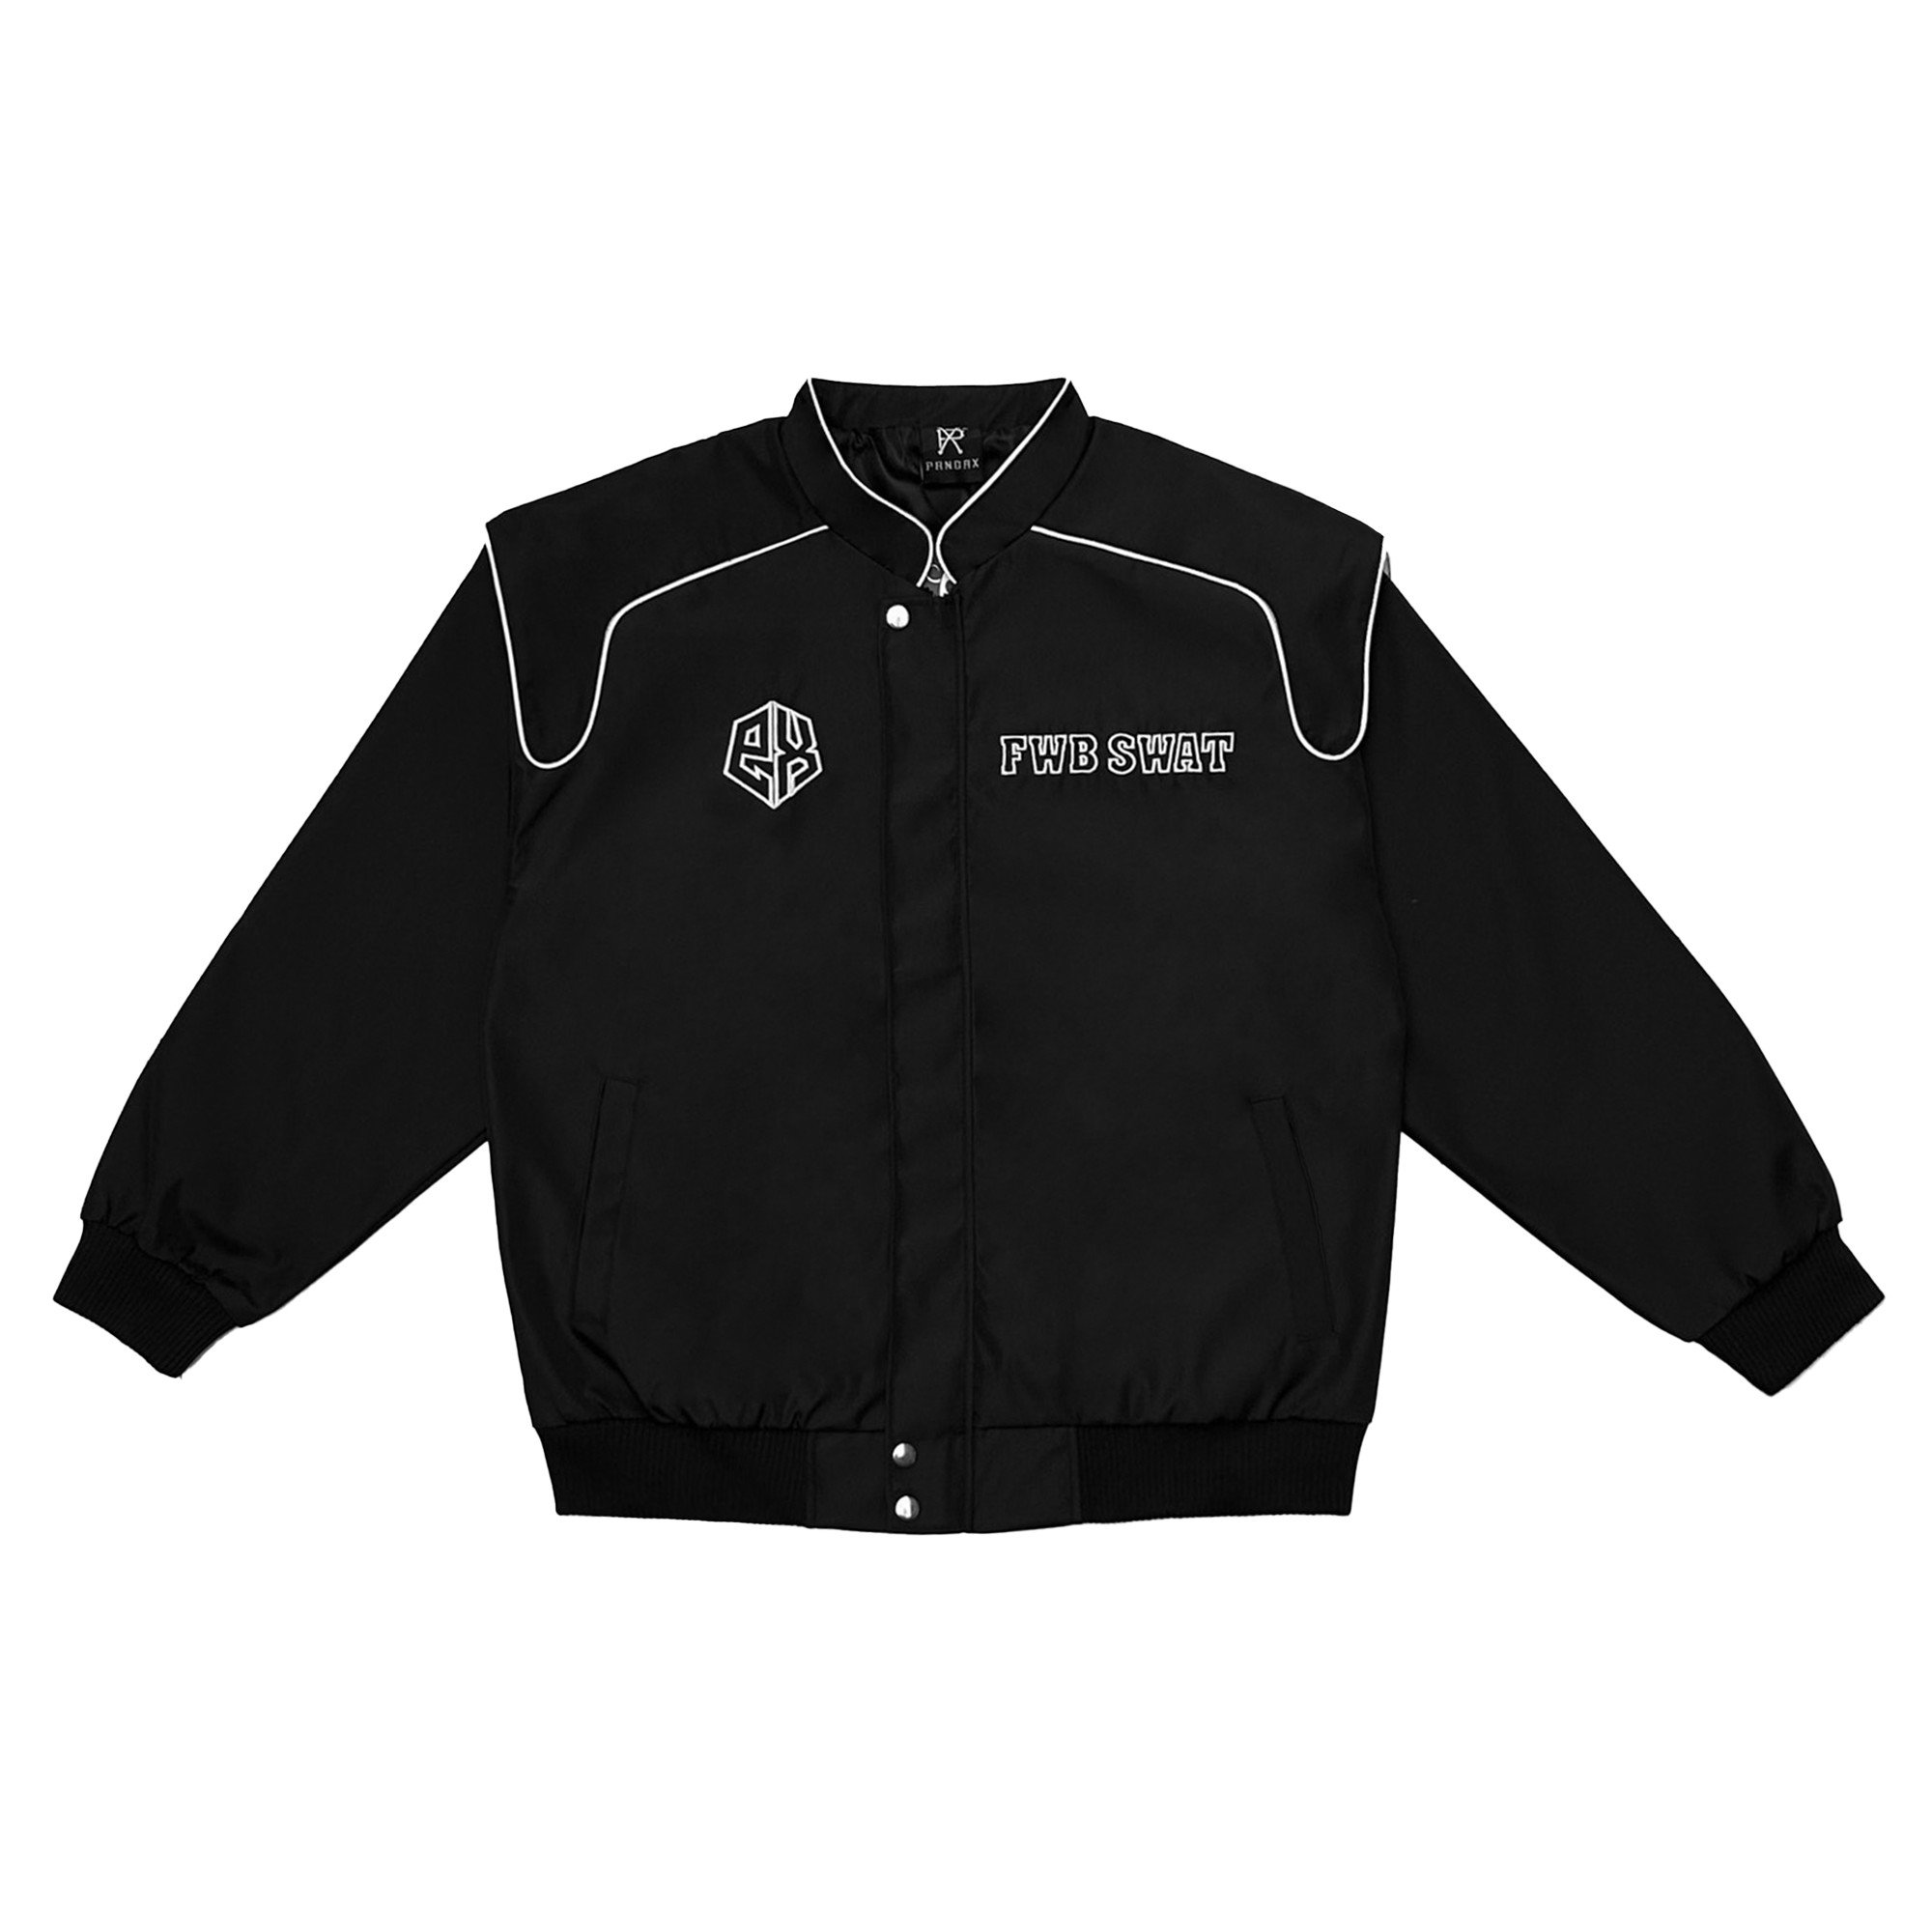 Áo khoác dù nam 3 lớp FWB SWAT Jacket áo gió big size nam nữ khoác form rộng streetwear local brand PANDAX POLIME